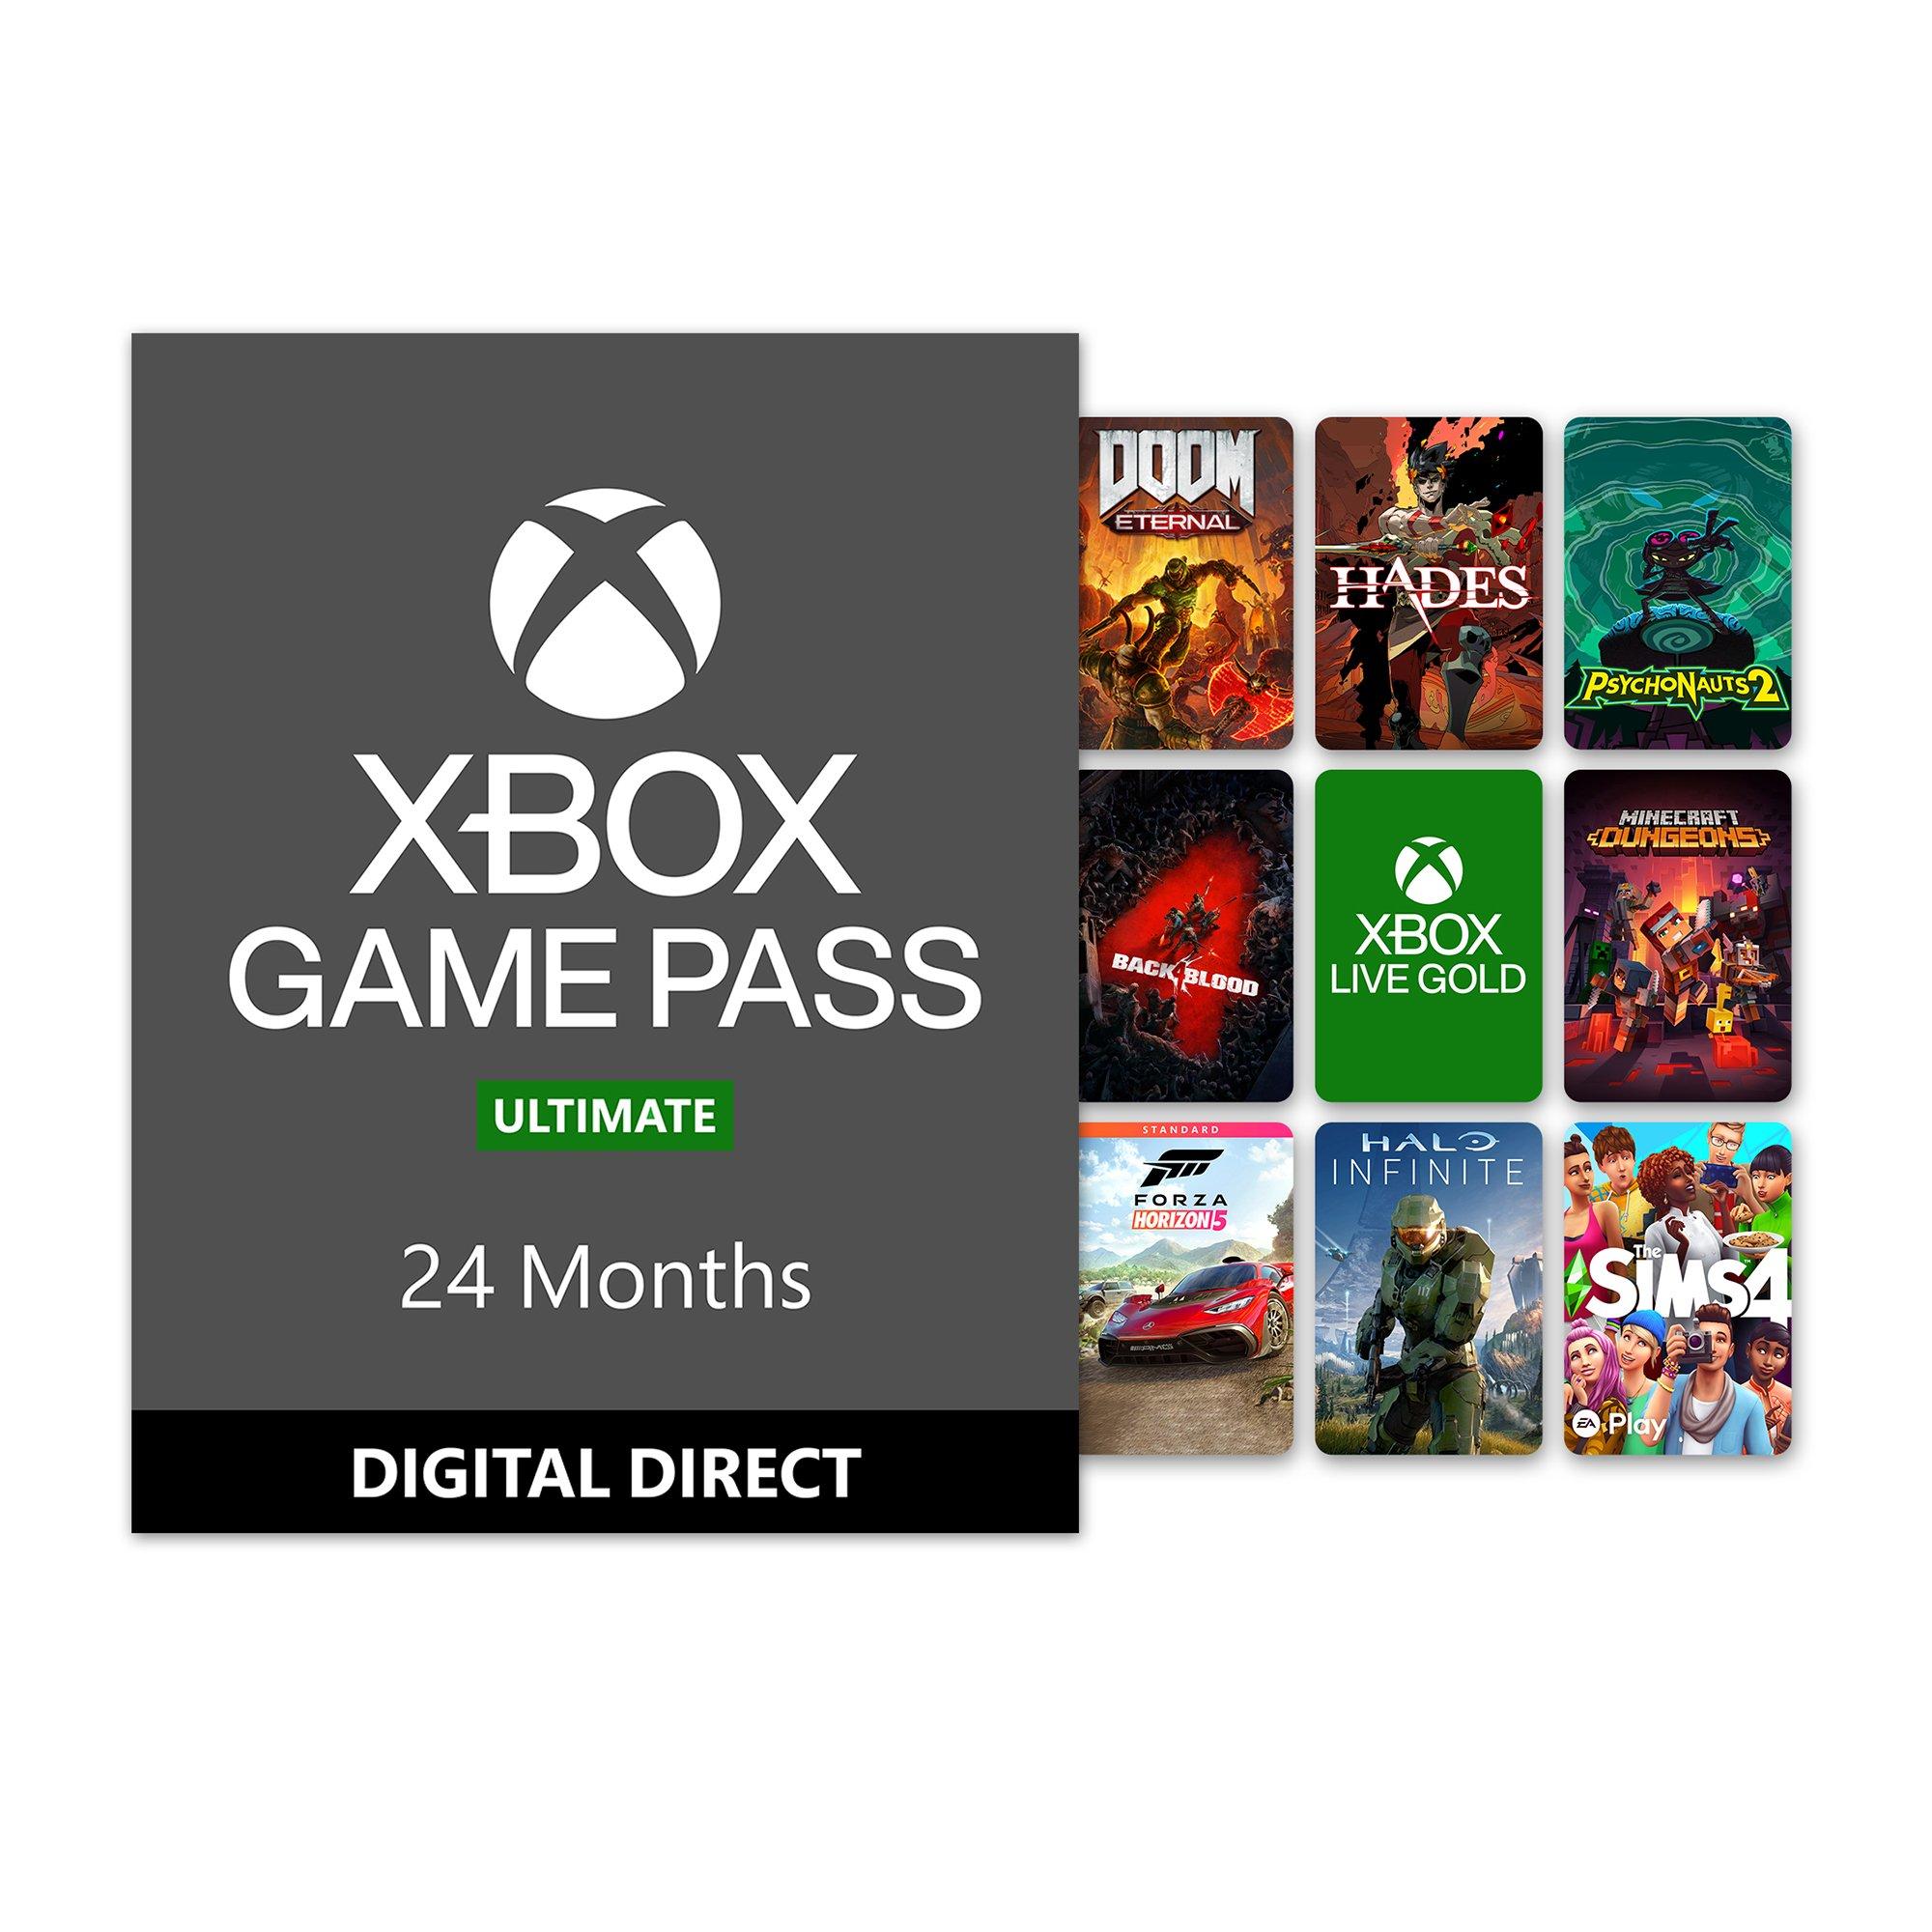 Microsoft – Xbox Series S Xbox All Access